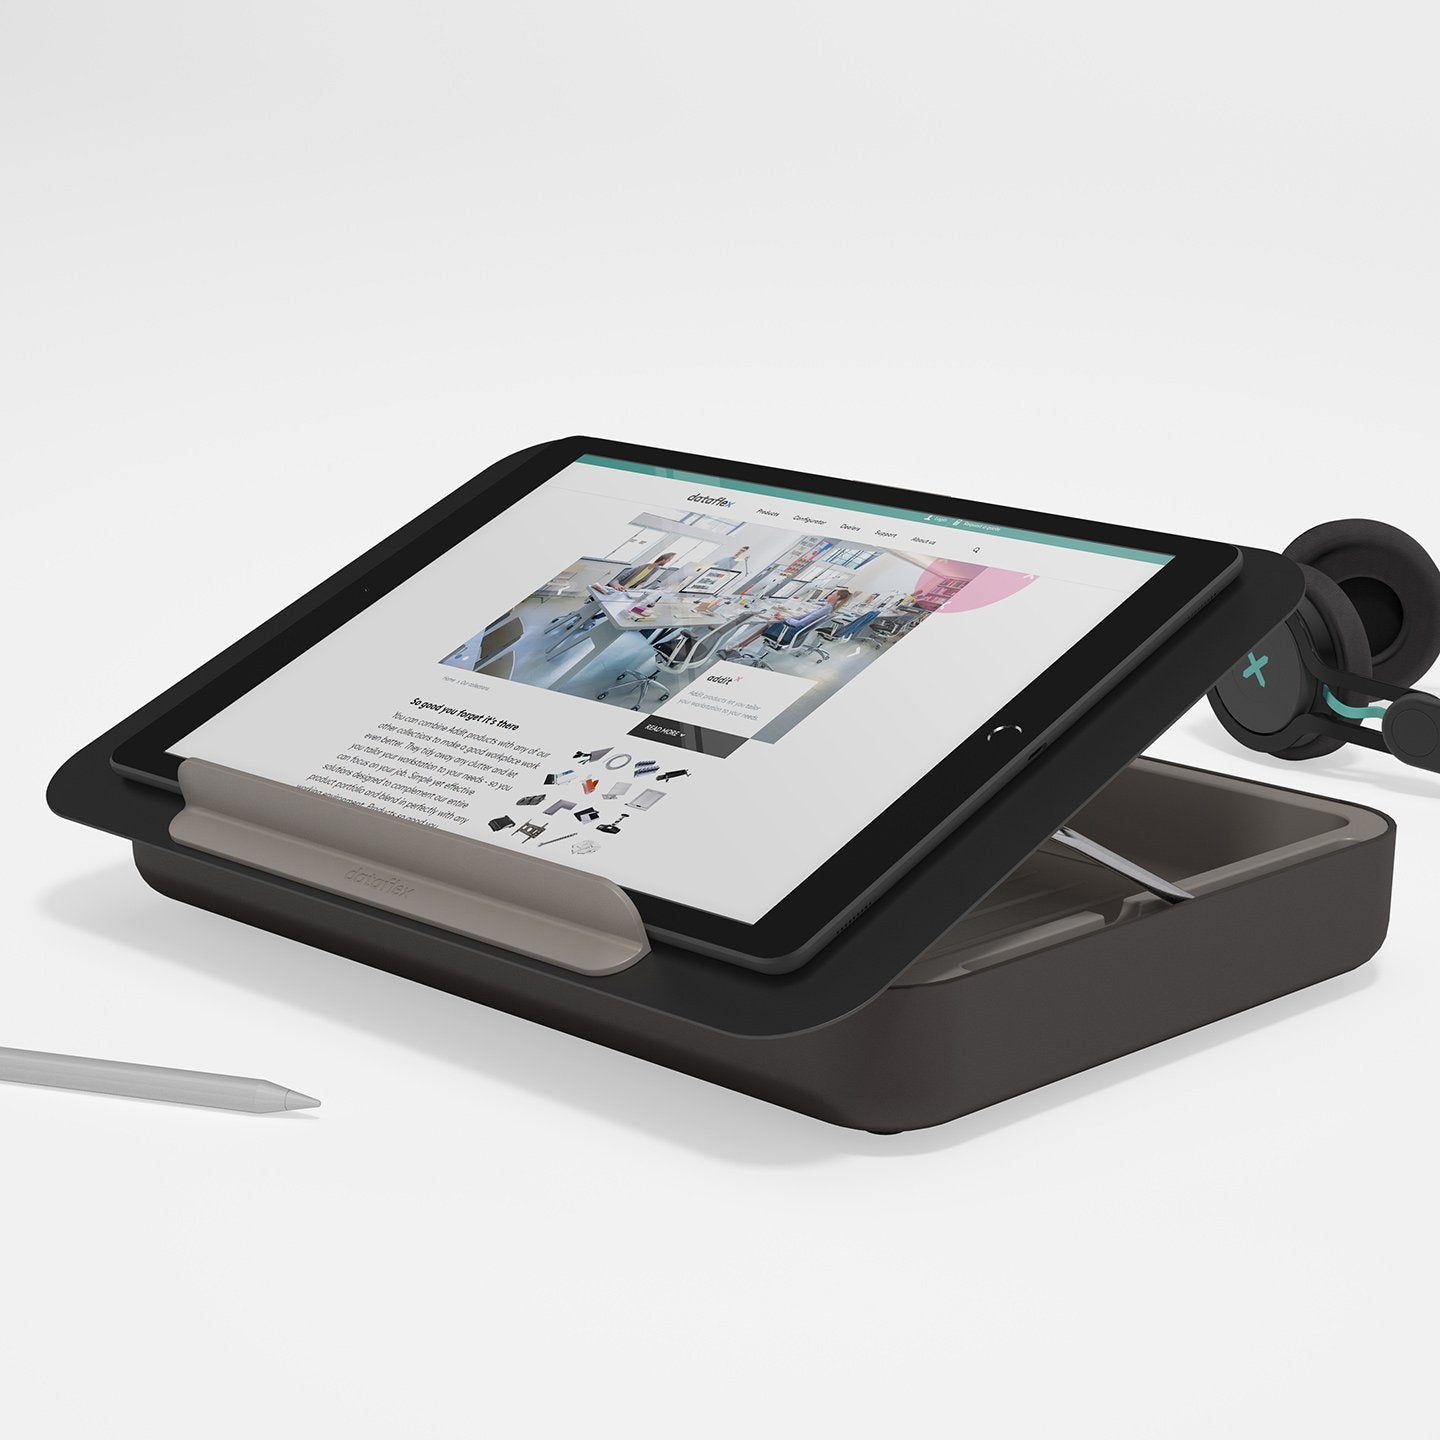 Zwarte ergonomische toolbox met geplaatste ipad  uit de Addit Bento® collectie van Dataflex